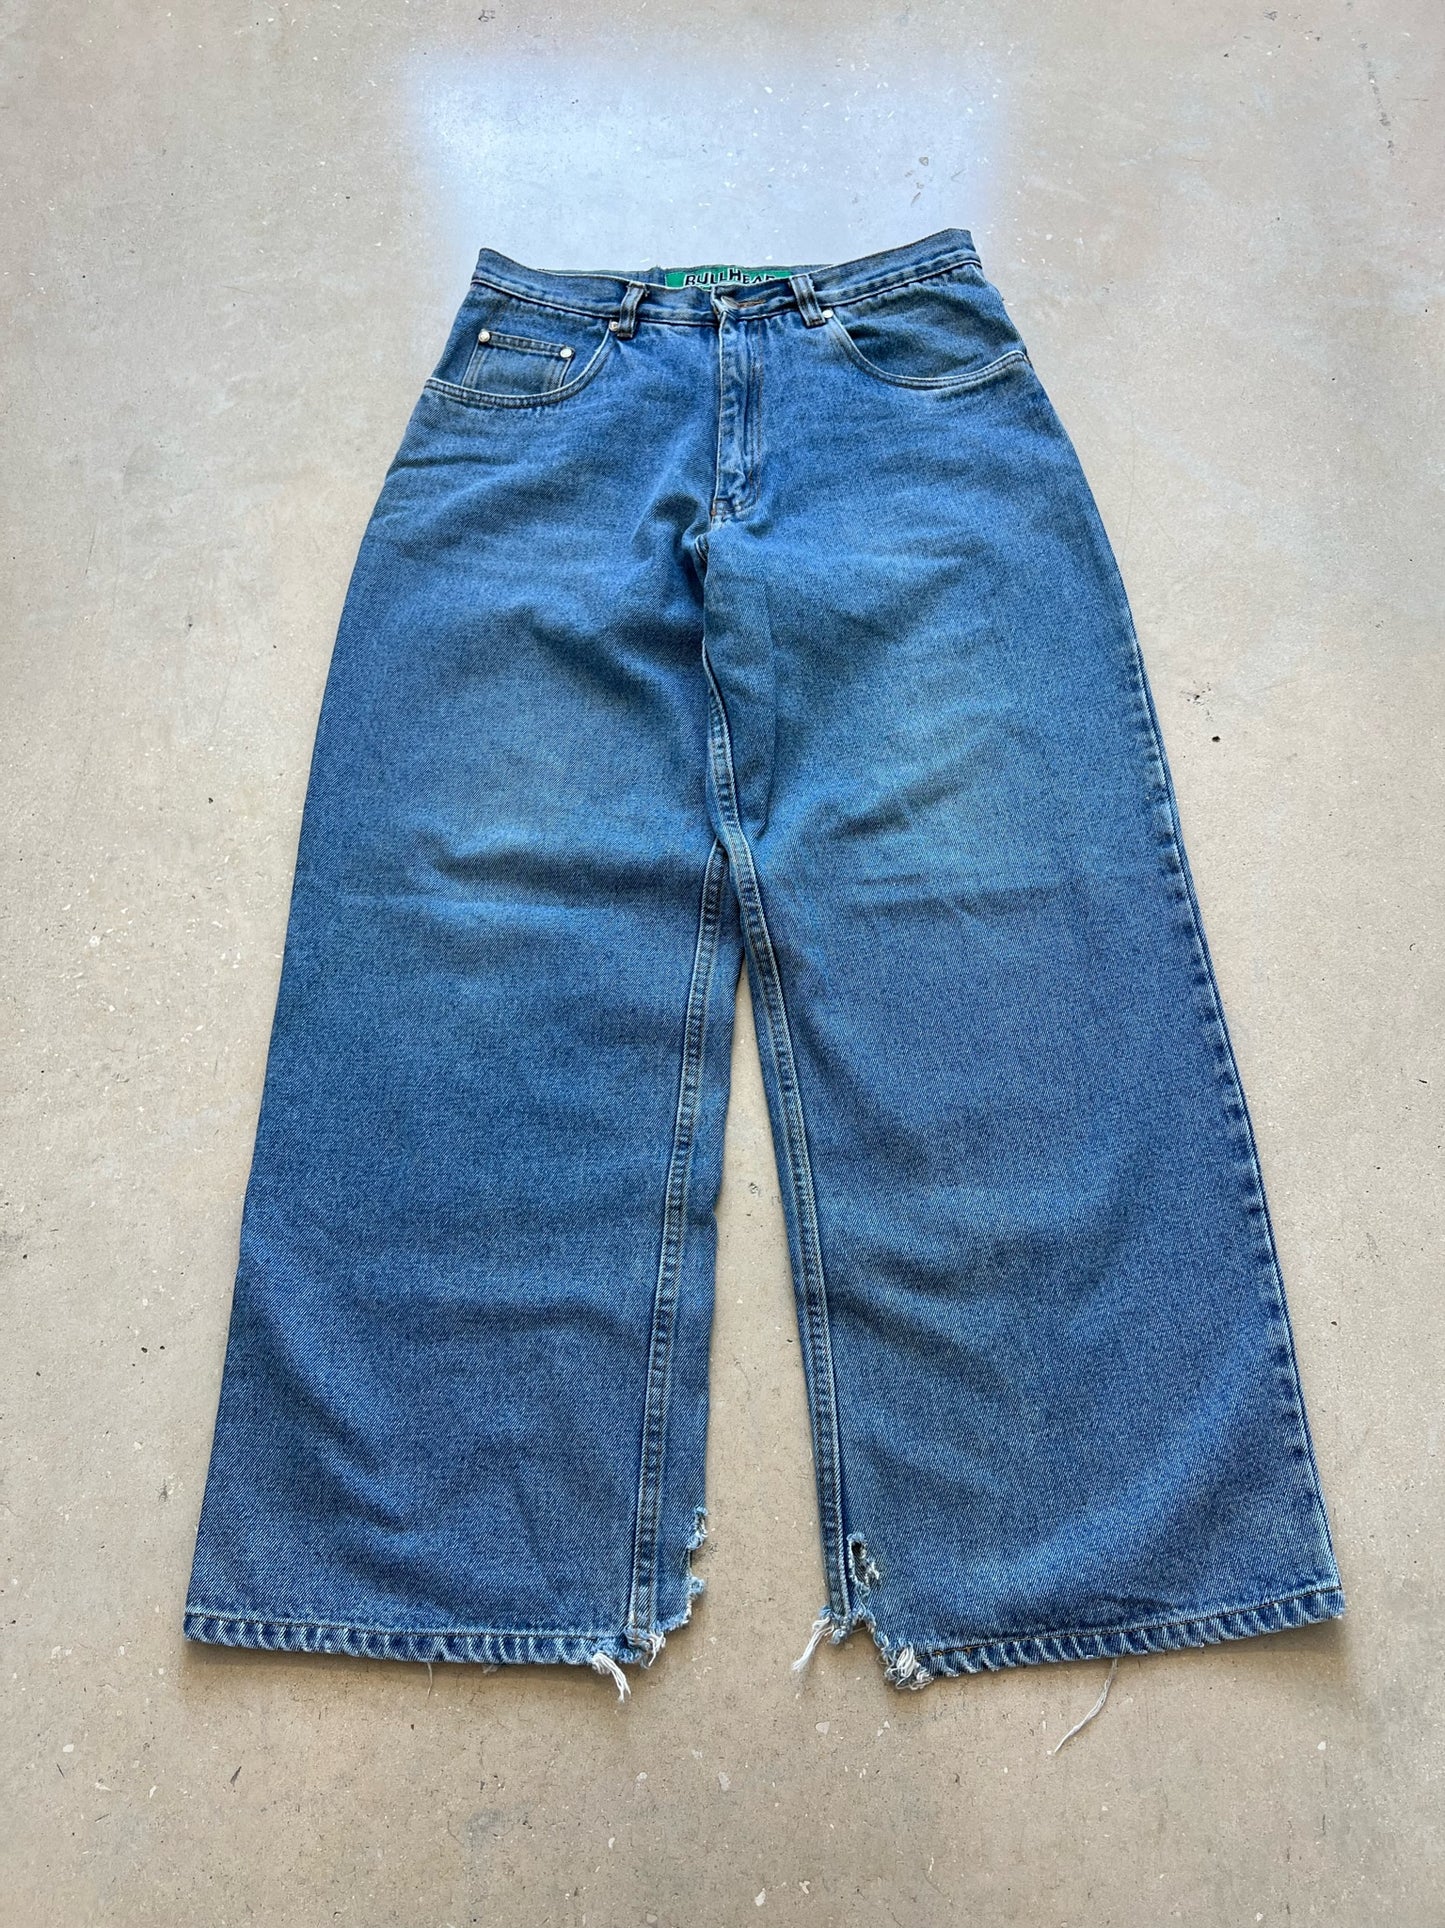 90's Baggy Bullhead Jeans 32 x 30